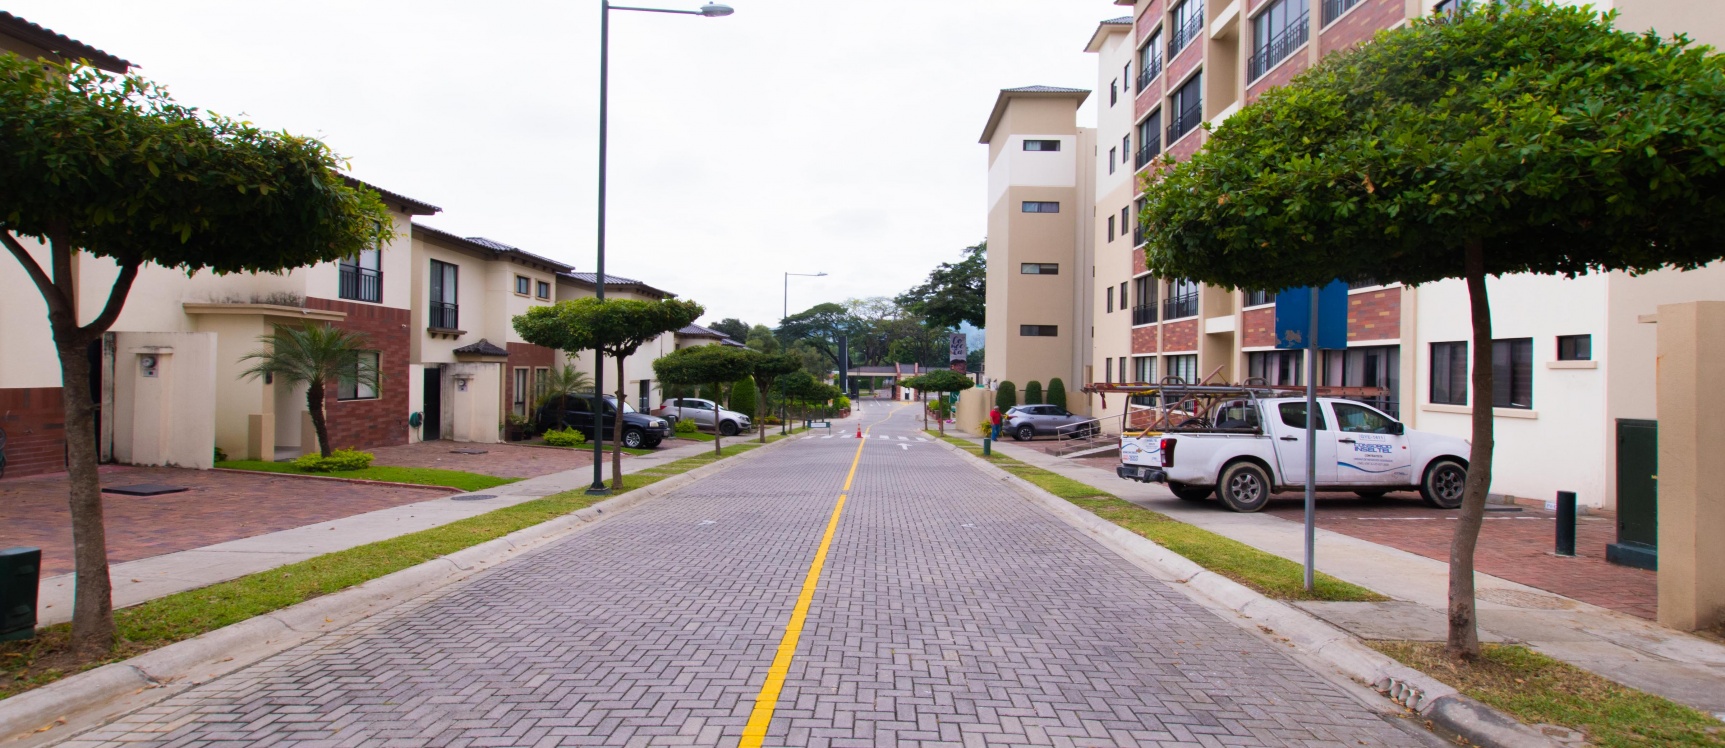 GeoBienes - Departamento en venta ubicado en la Urbanización Costa Brisa, Vía a la Costa - Plusvalia Guayaquil Casas de venta y alquiler Inmobiliaria Ecuador